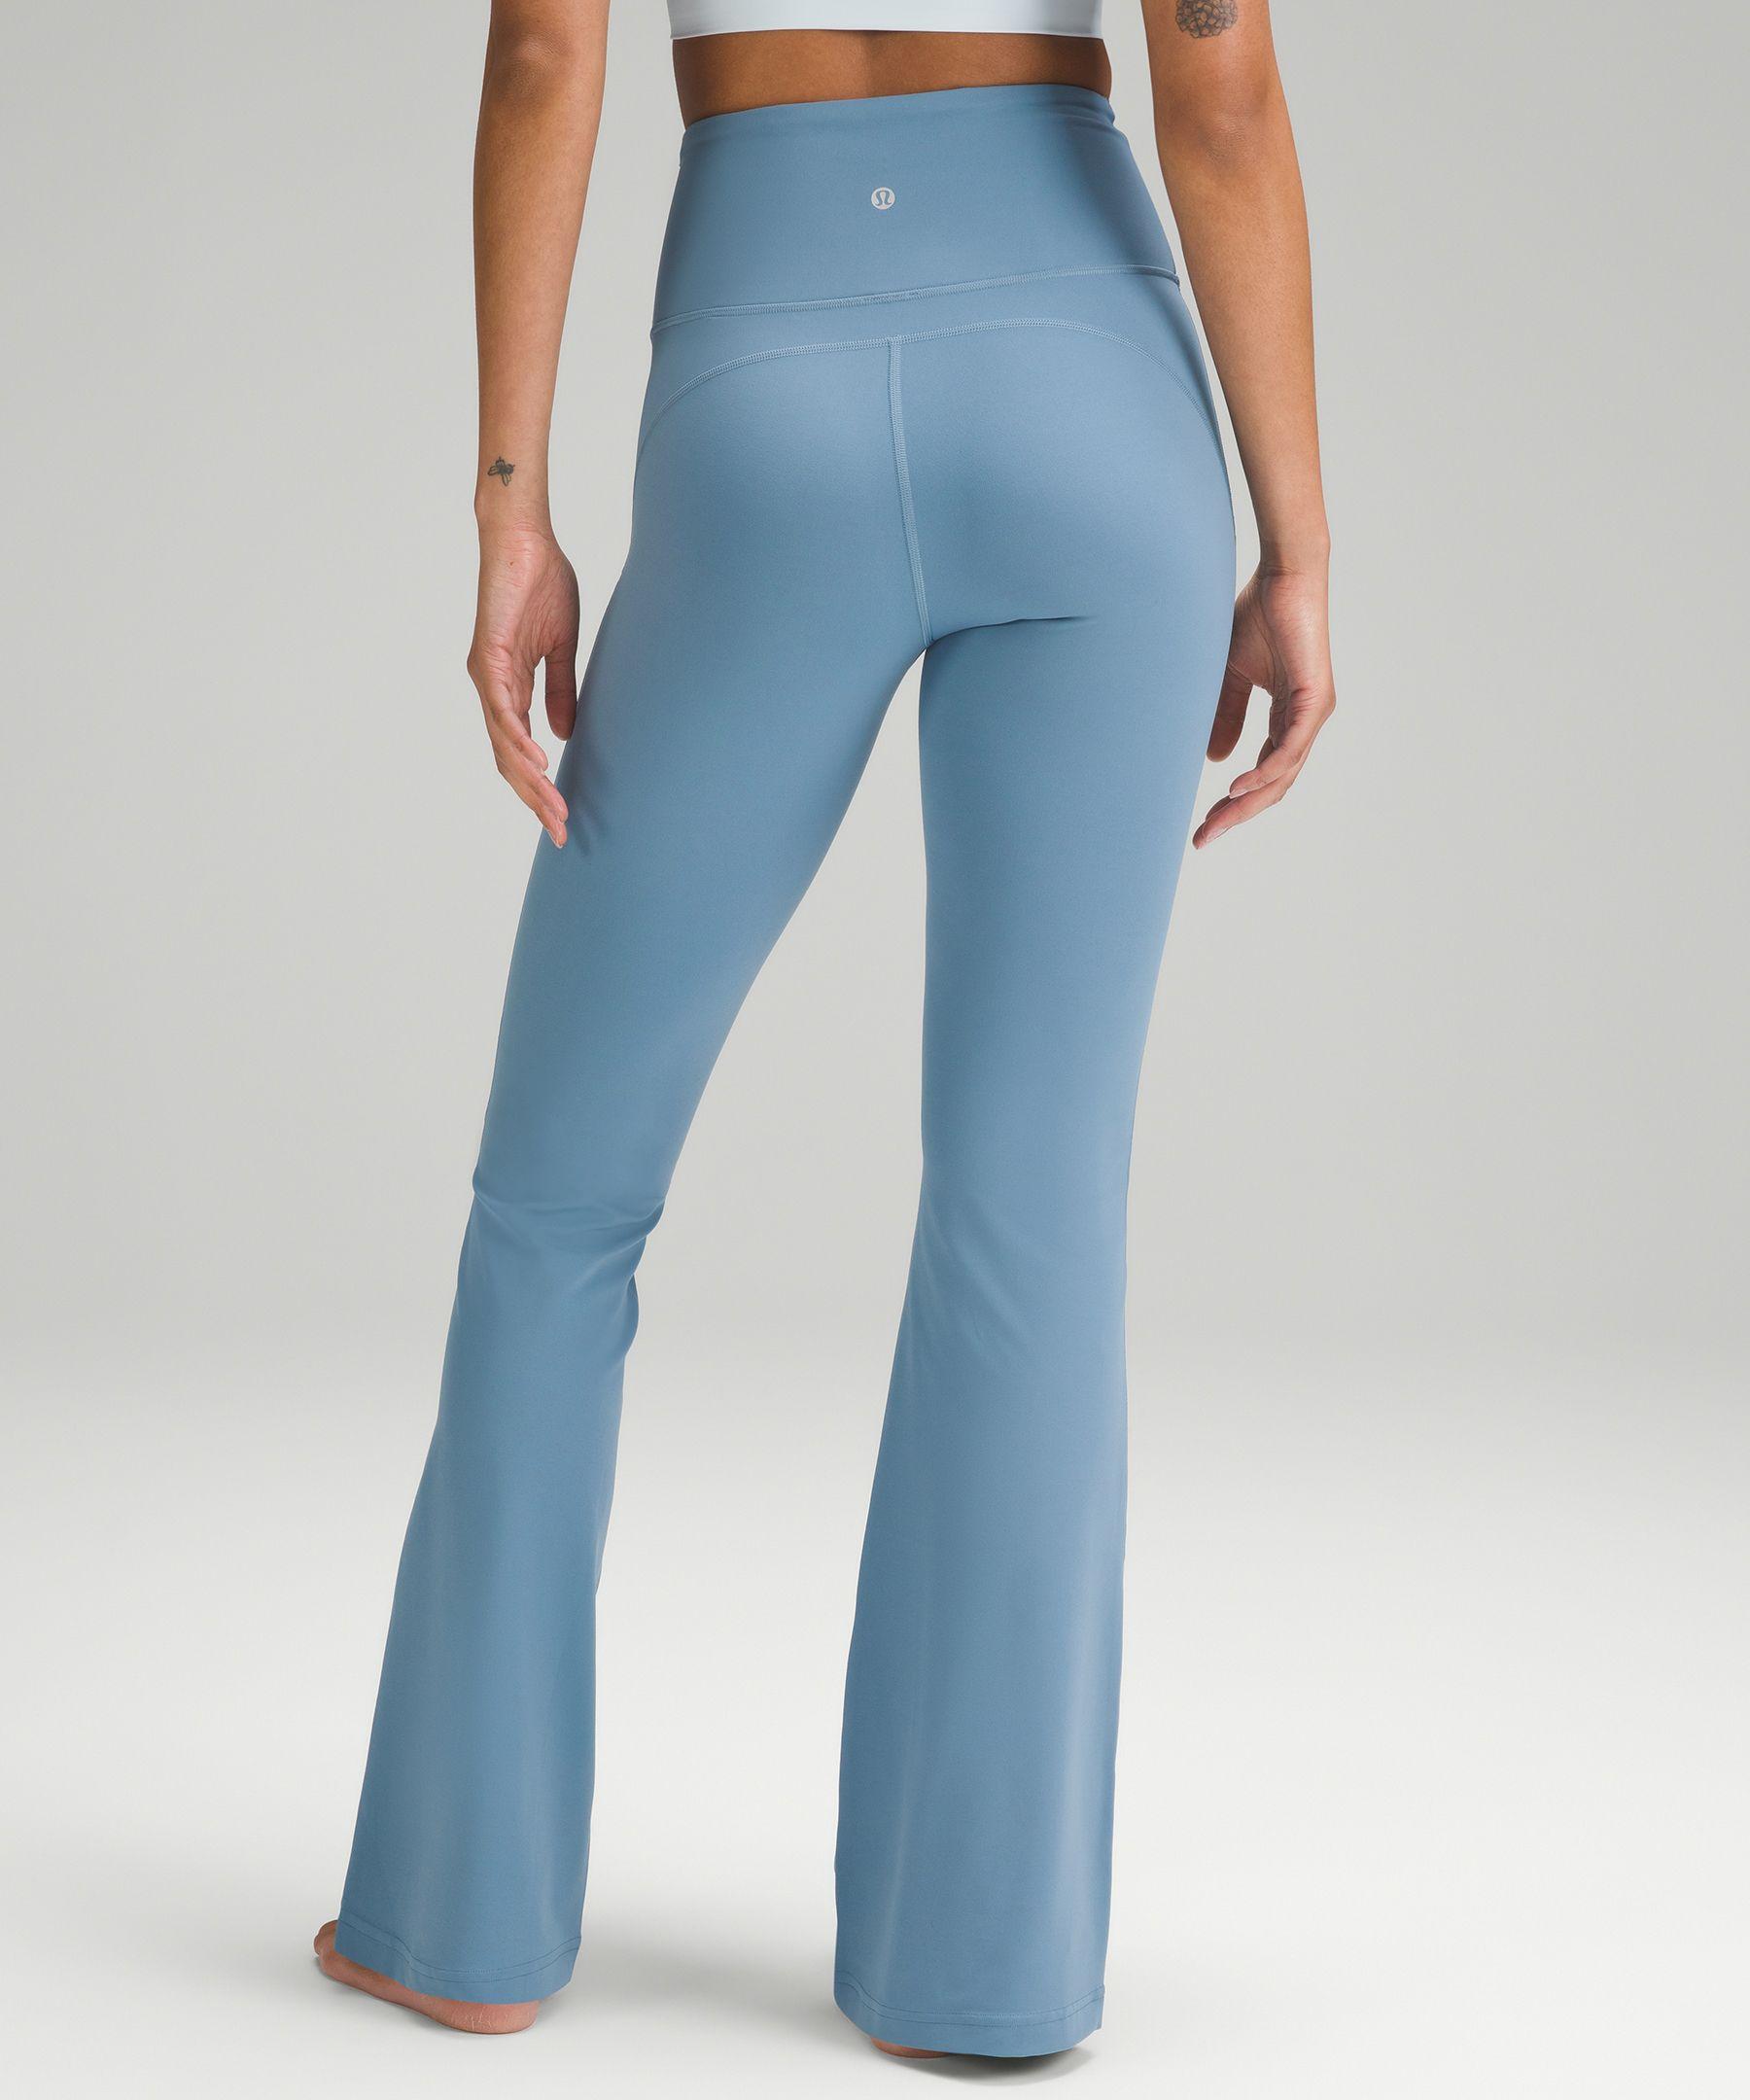 lululemon athletica Groove Super-high-rise Flared Pants Nulu Regular -  Color Blue - Size 14